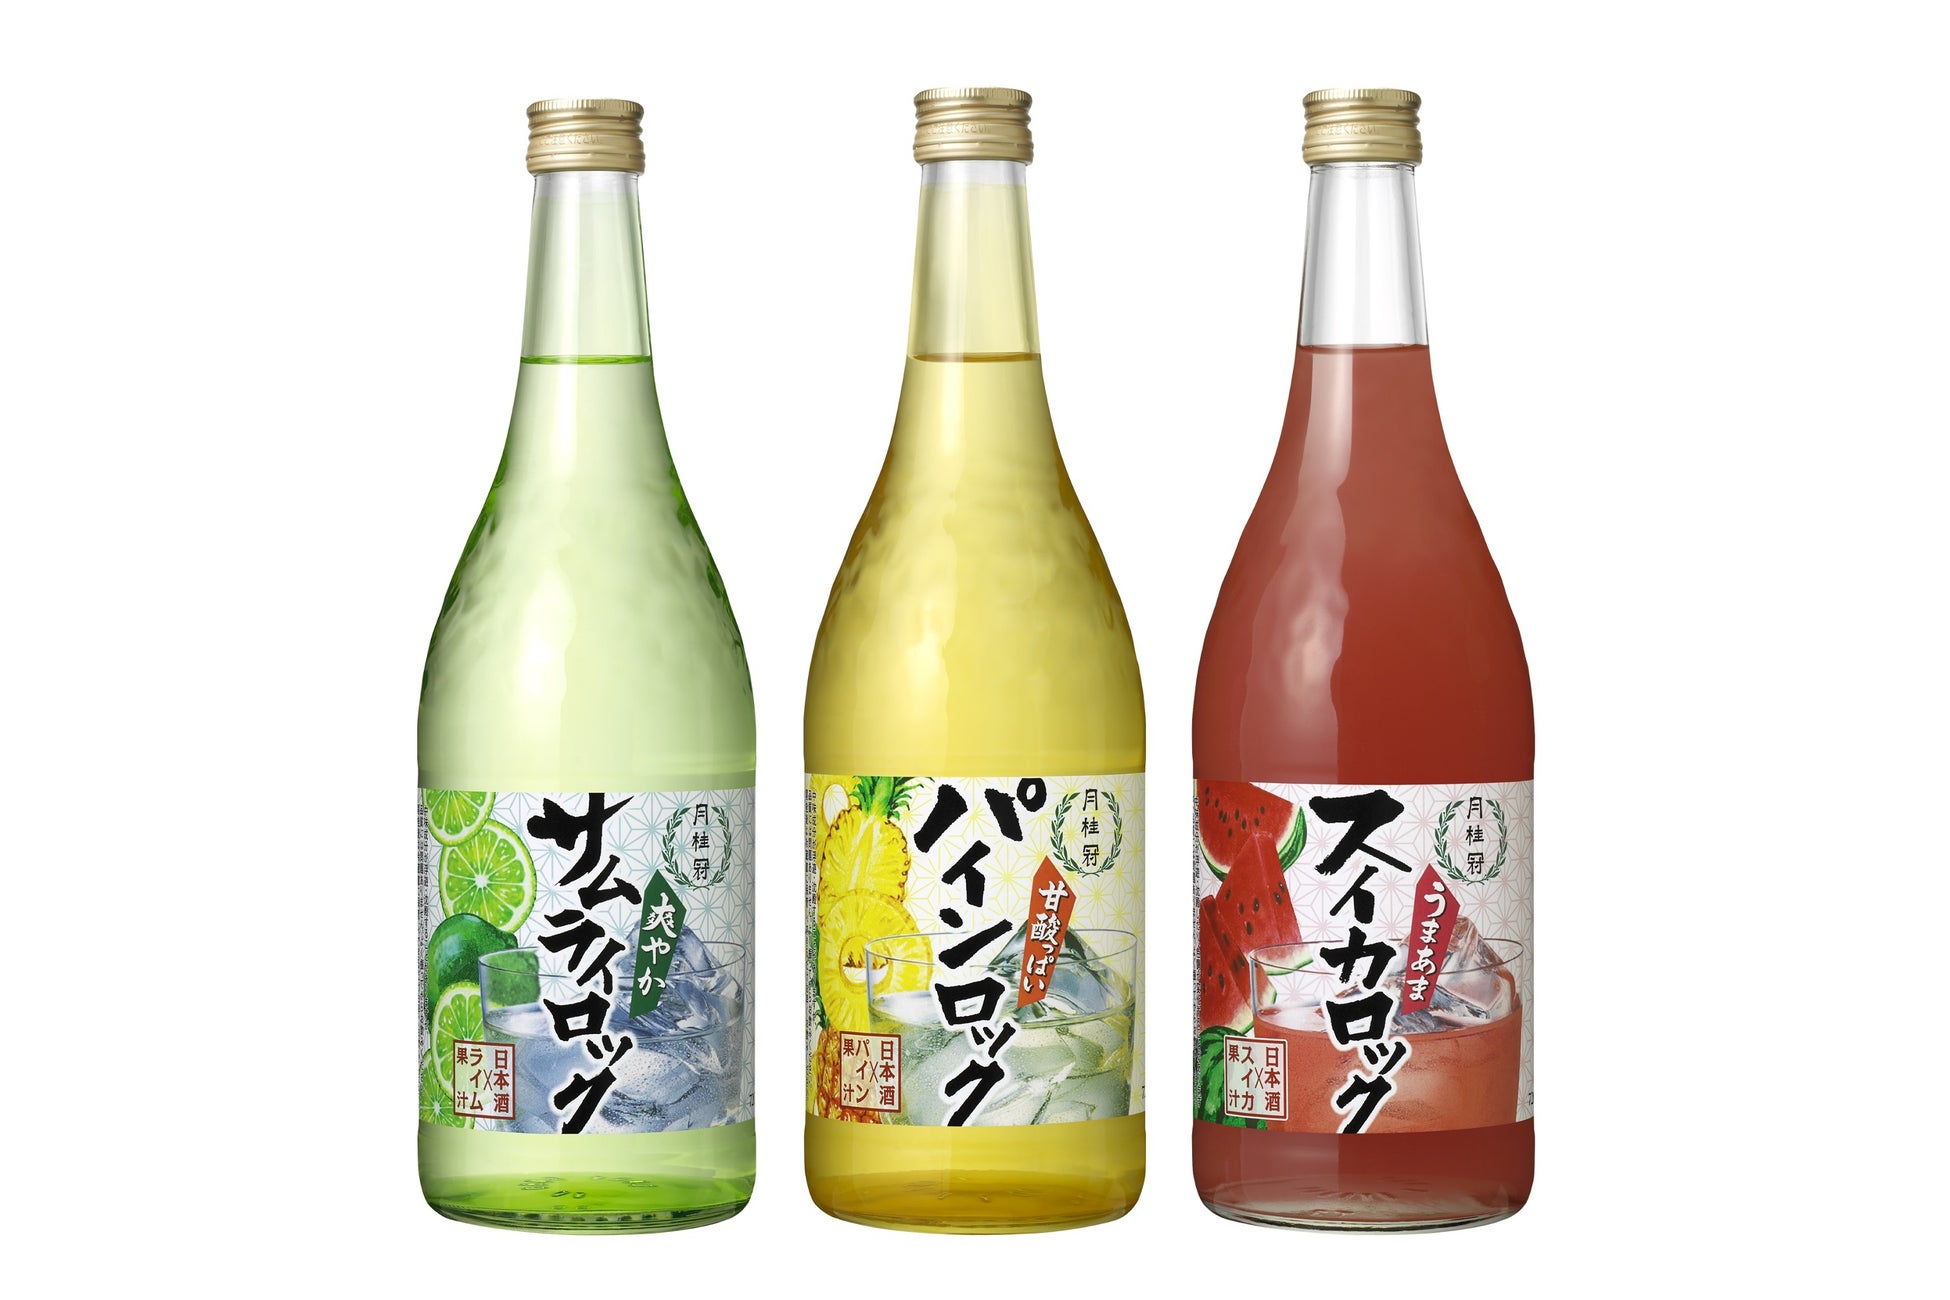 唐辛子を配合した刺激的な味わい『アサヒスパイスビール』 新商品のテスト販売サイト「ASAHI Happy Project」で3月1日発売